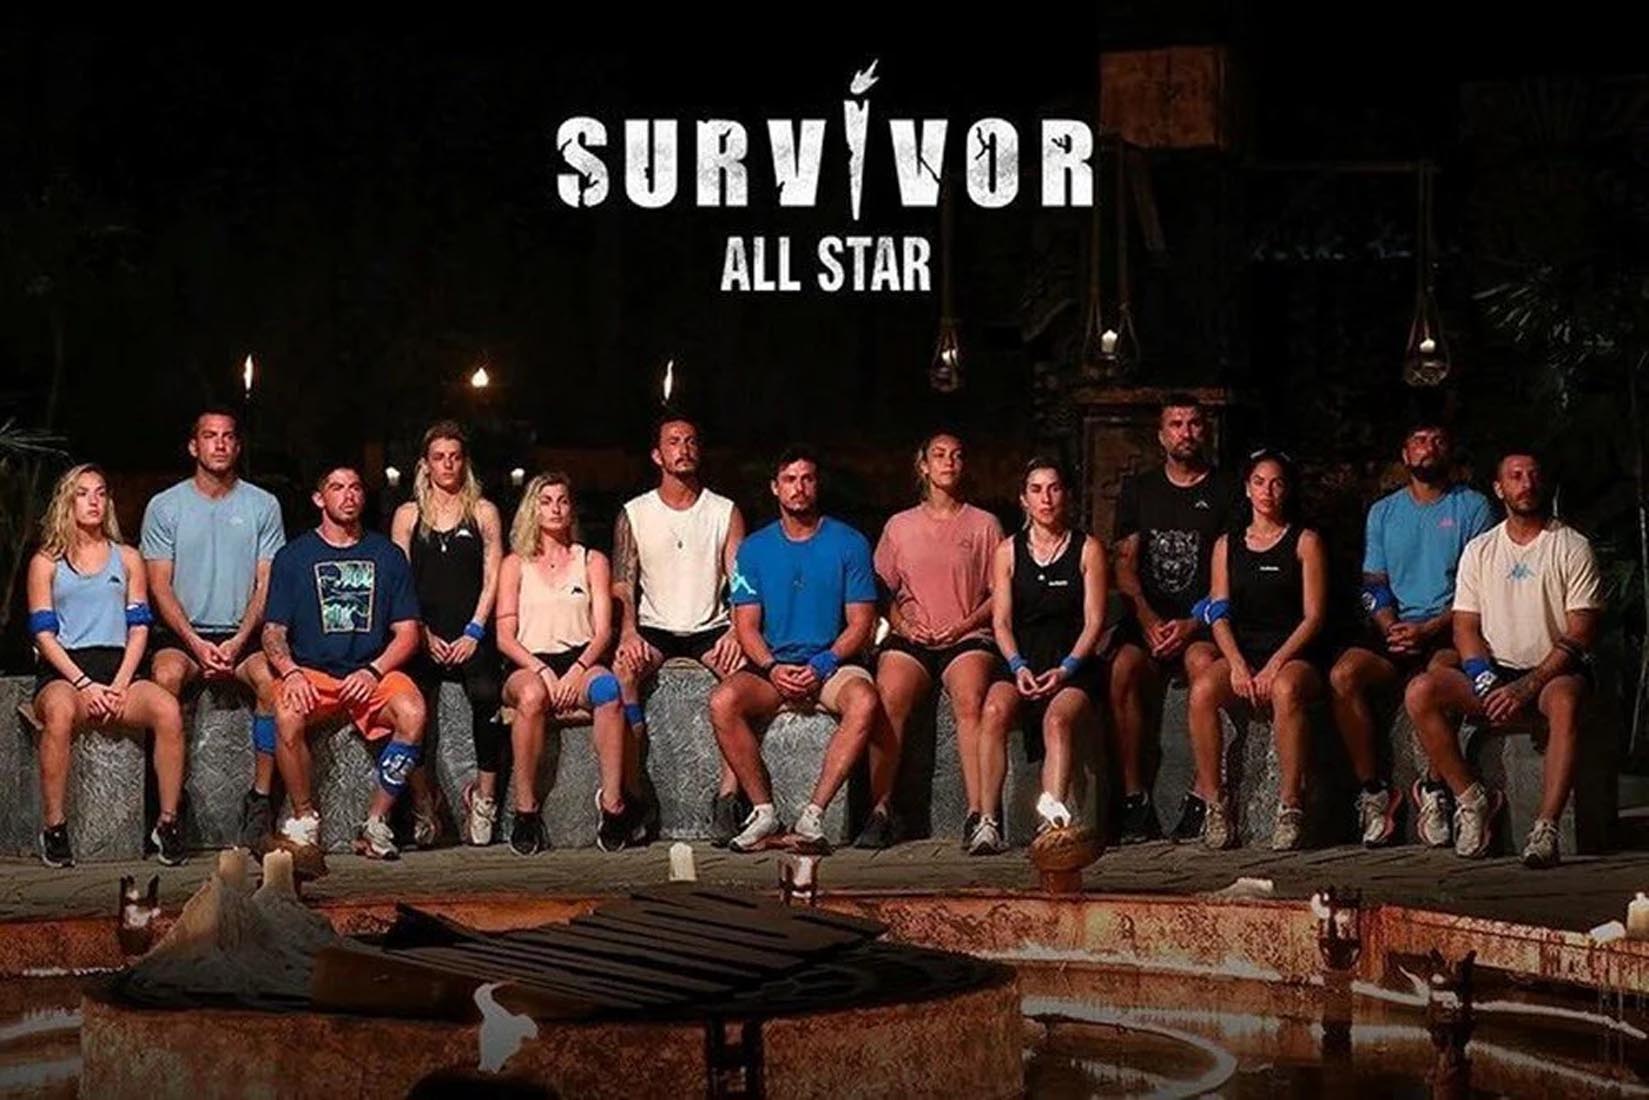 Survivor dokunulmazlık oyununu kim kazandı? 26 Şubat Survivor All Star'da dokunulmazlık oyununu kazanan hangi takım oldu?